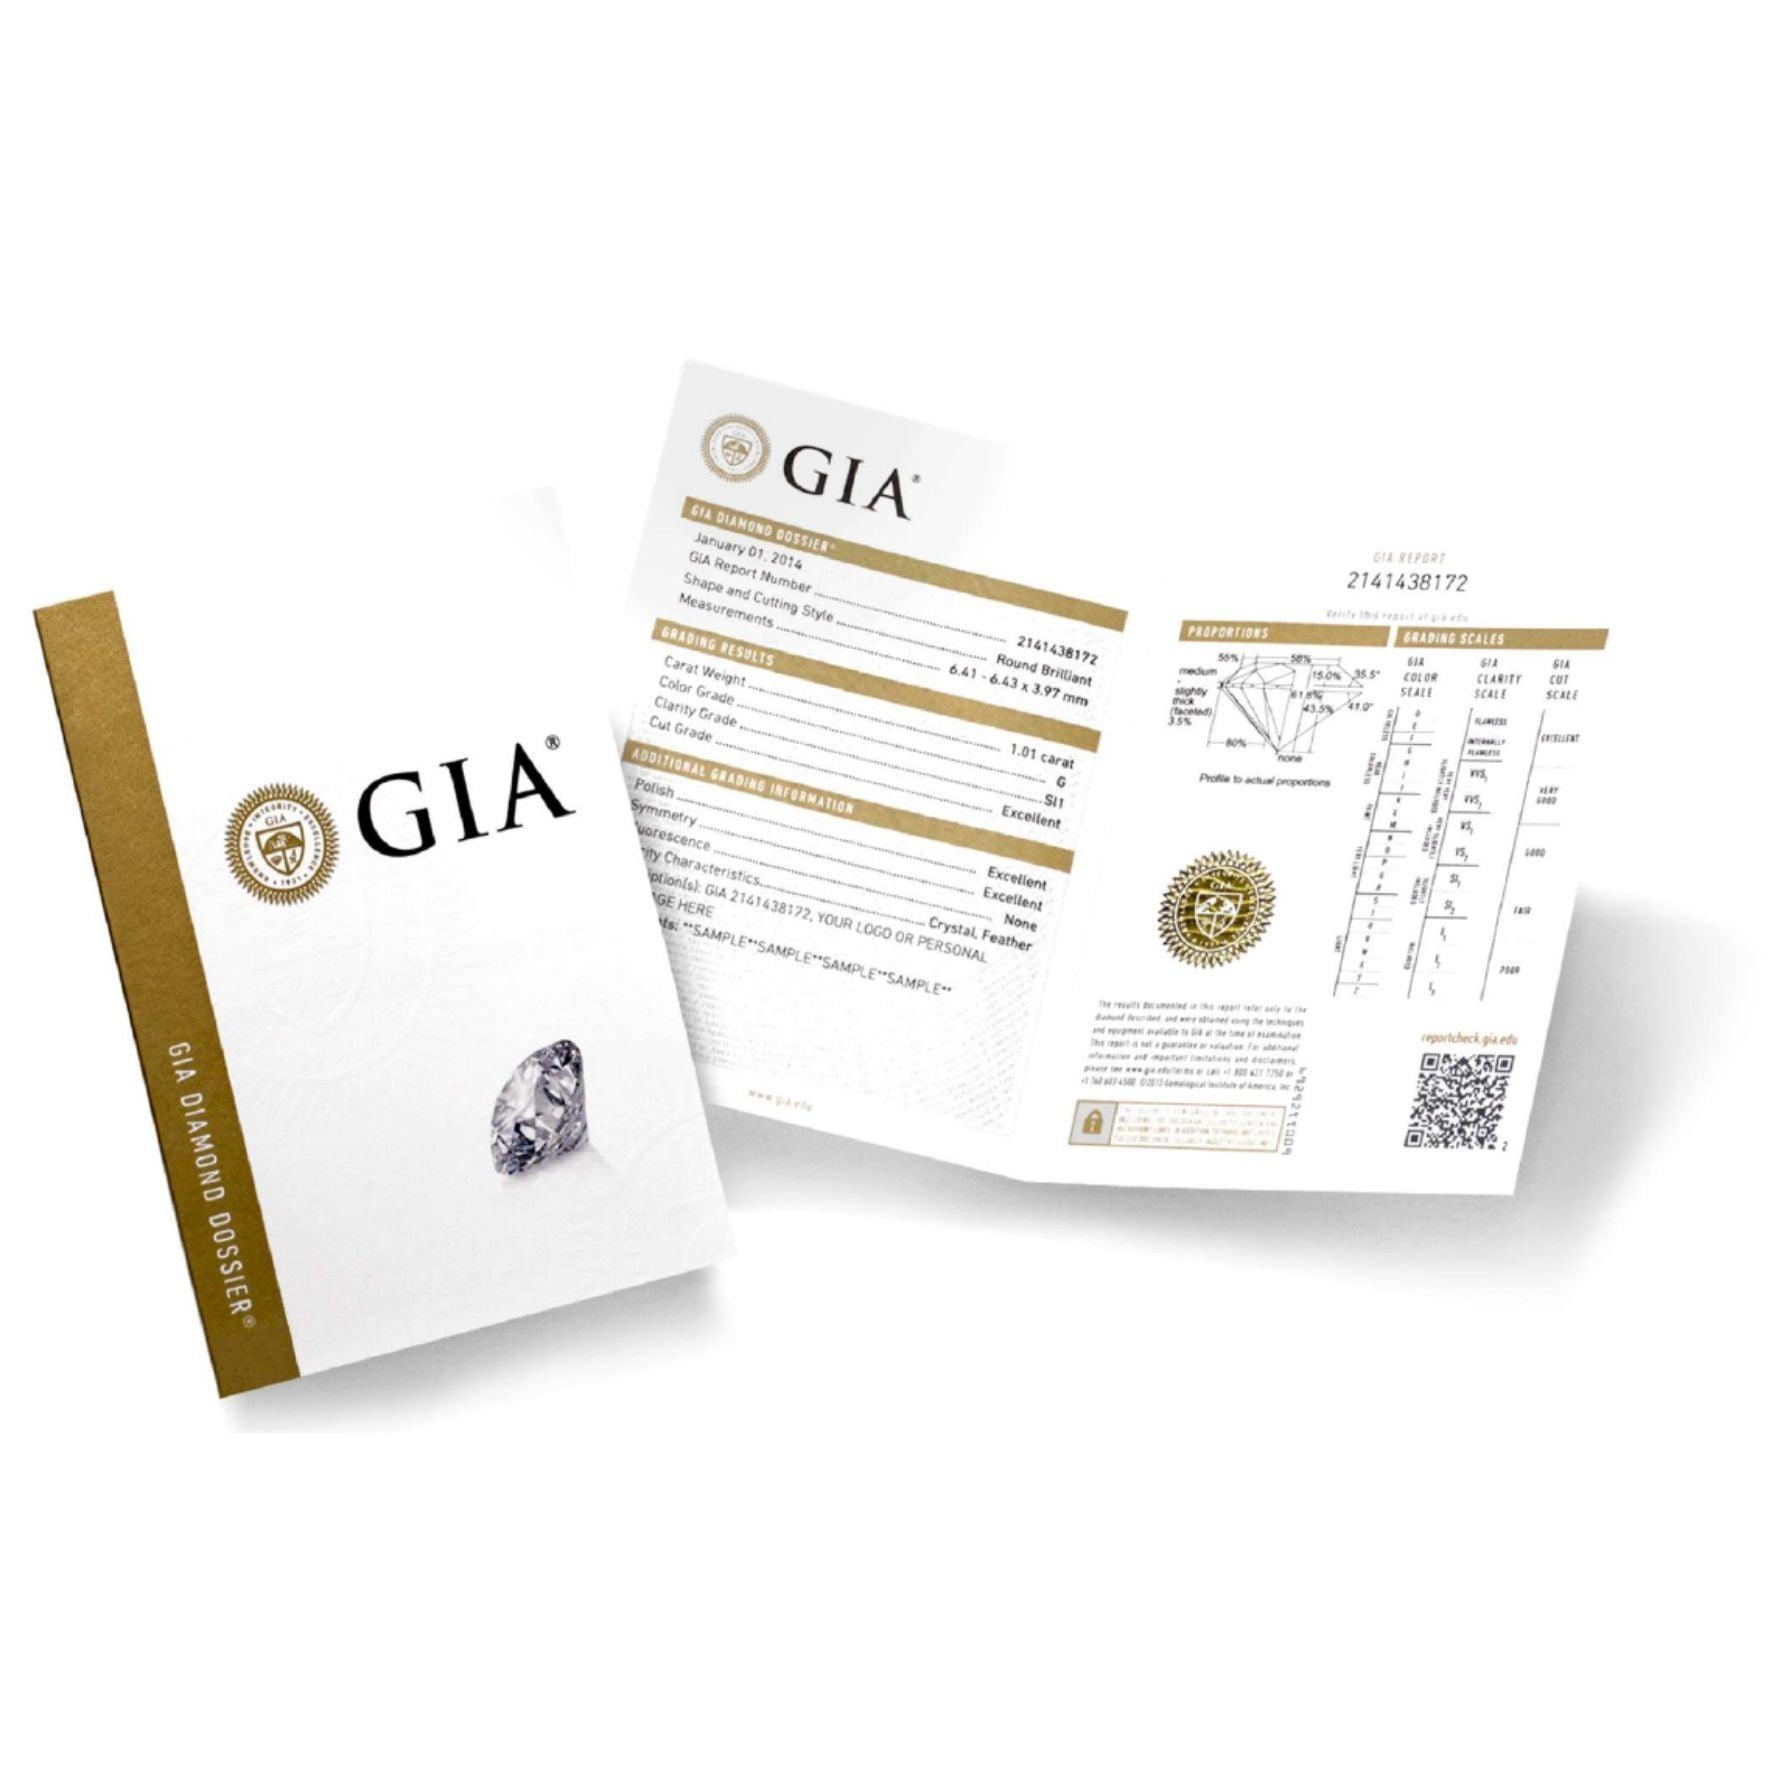 Πιστοποίηση διαμαντιού GIA για μονόπετρο δαχτυλίδι αρραβώνα. 